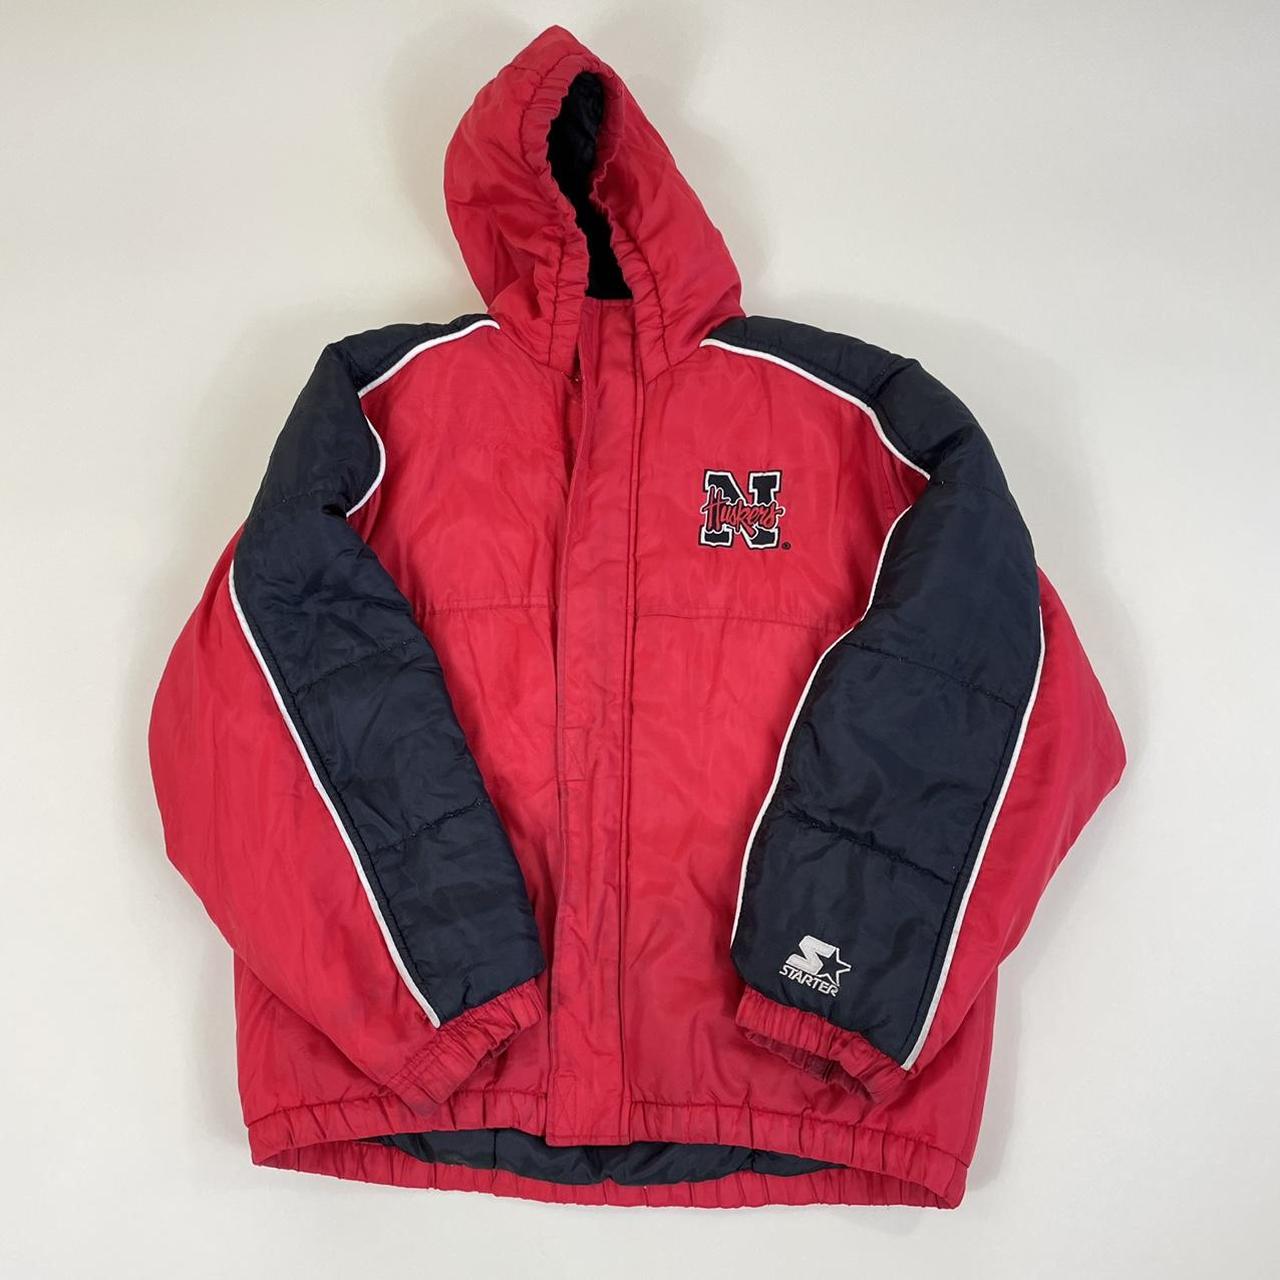 Vintage 90s Starter Jacket Nebraska Huskers Size:... - Depop